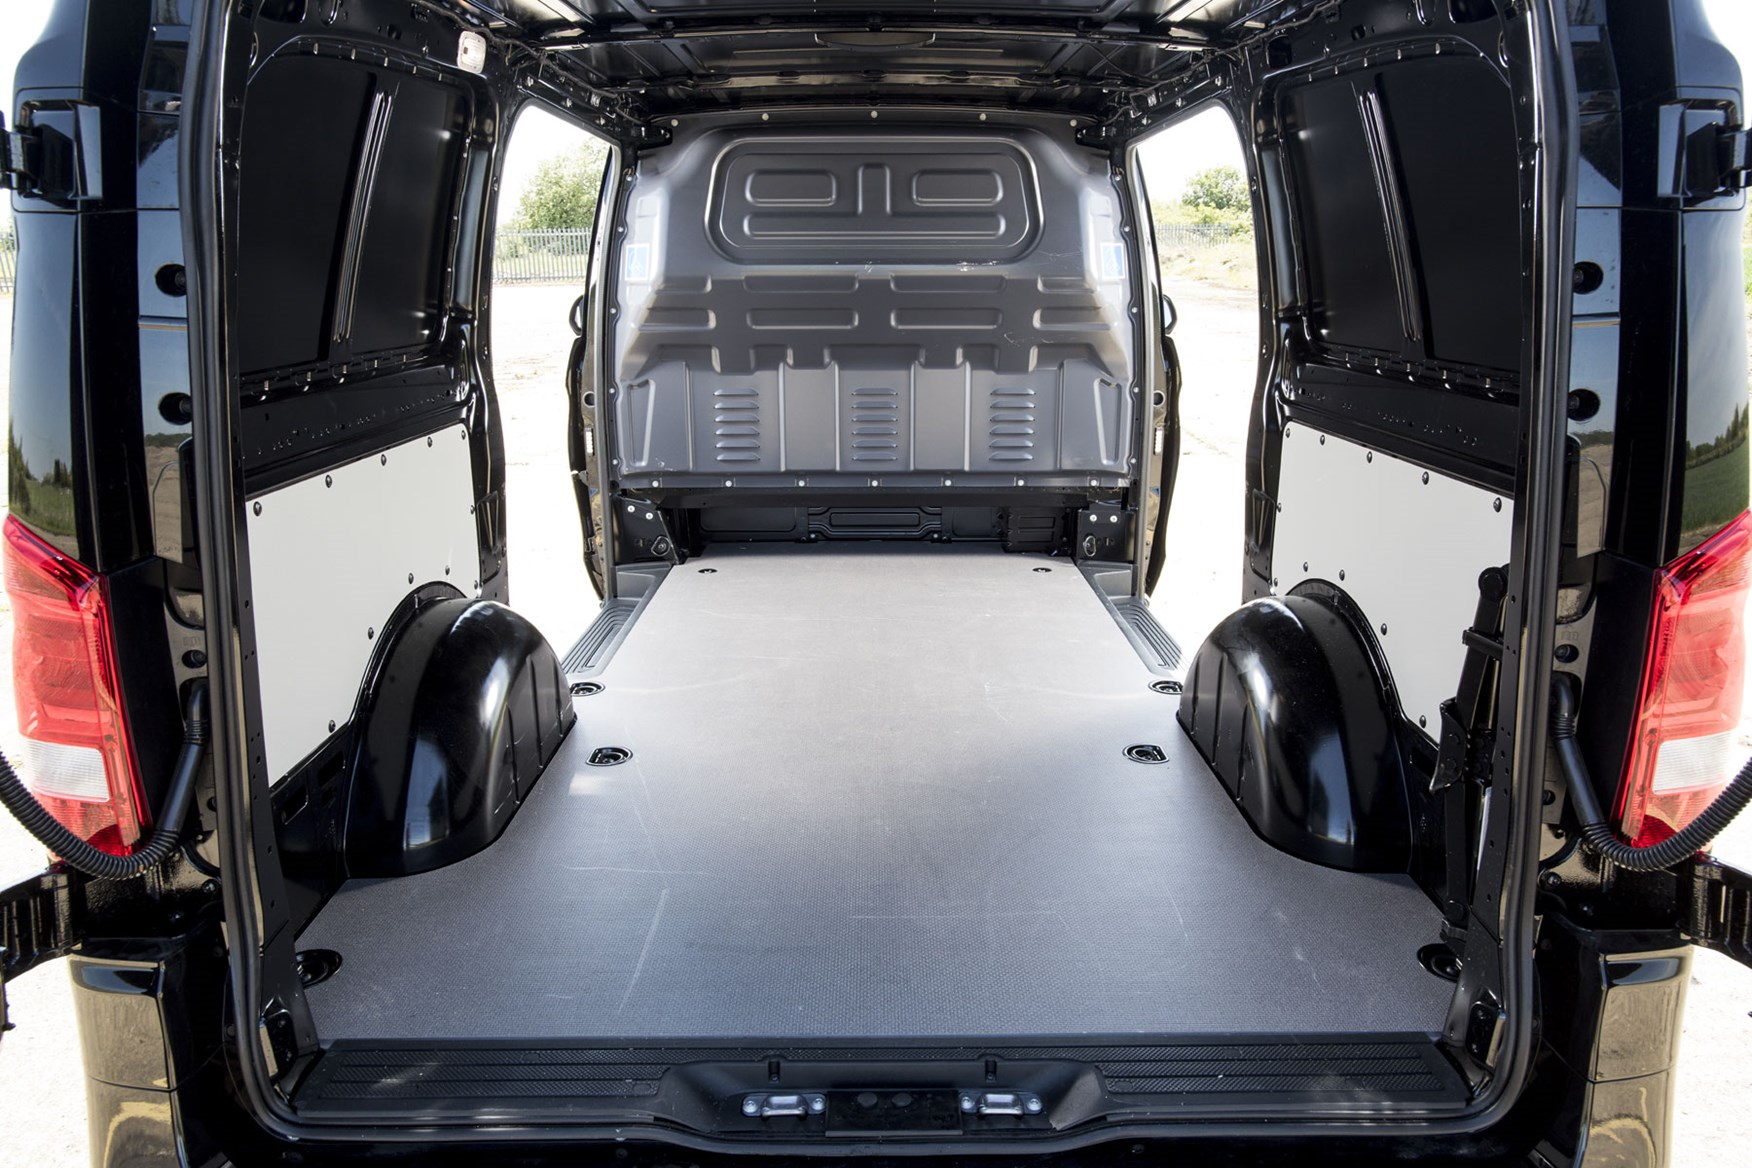 Mercedes Vito Premium review - load area